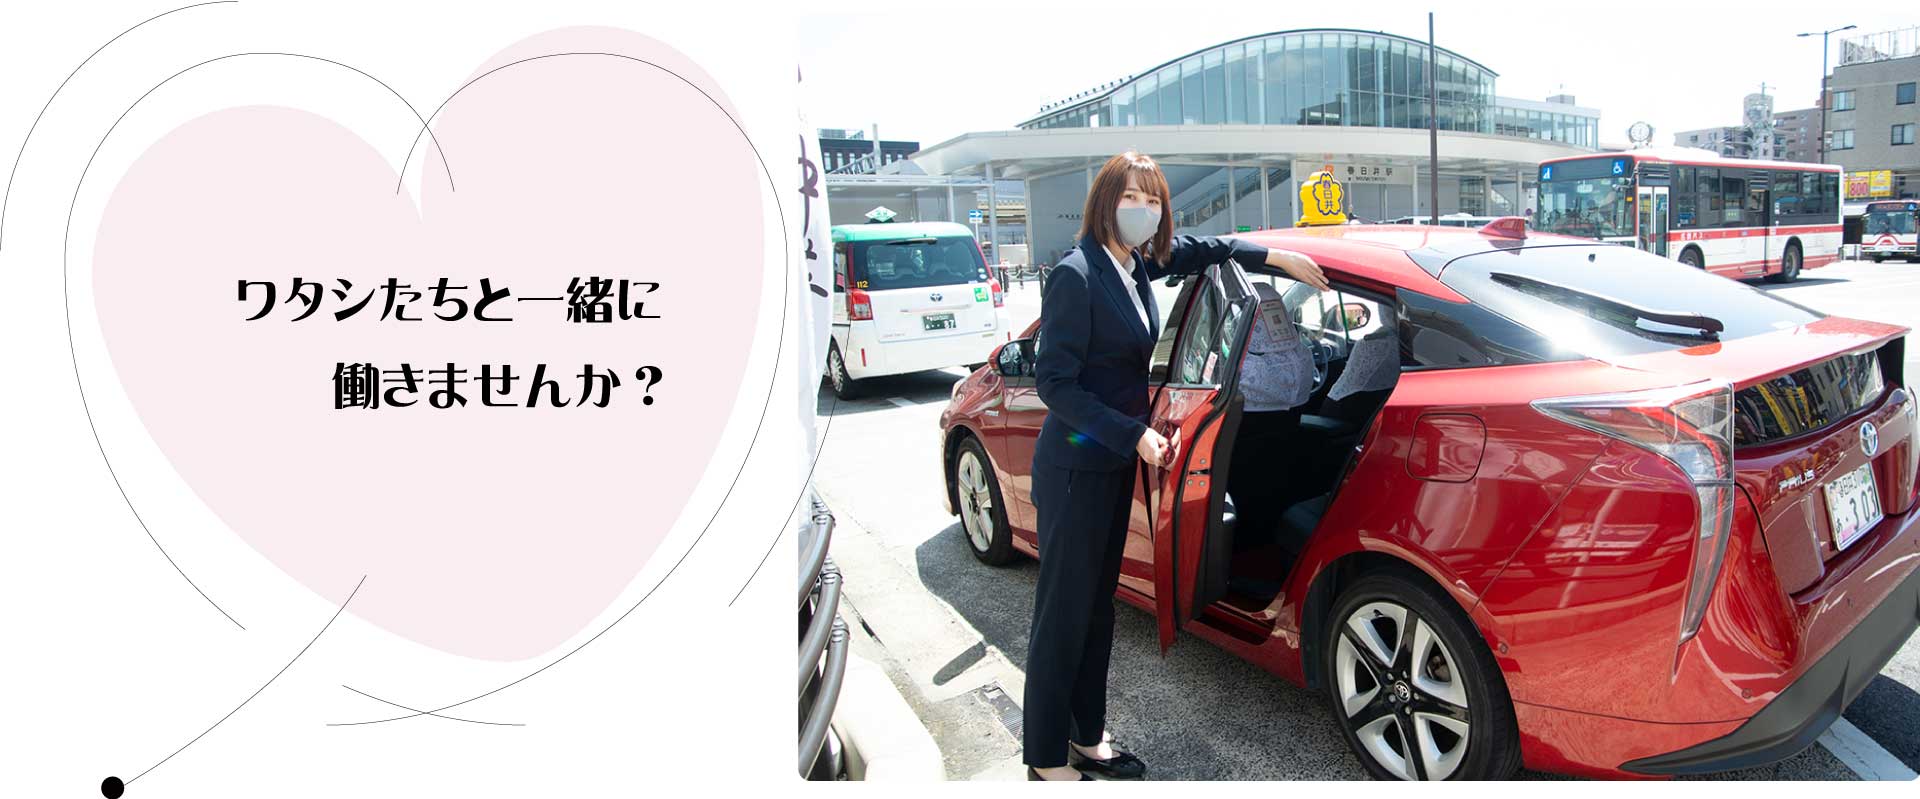 春日井タクシー タクシードライバー求人 転職情報